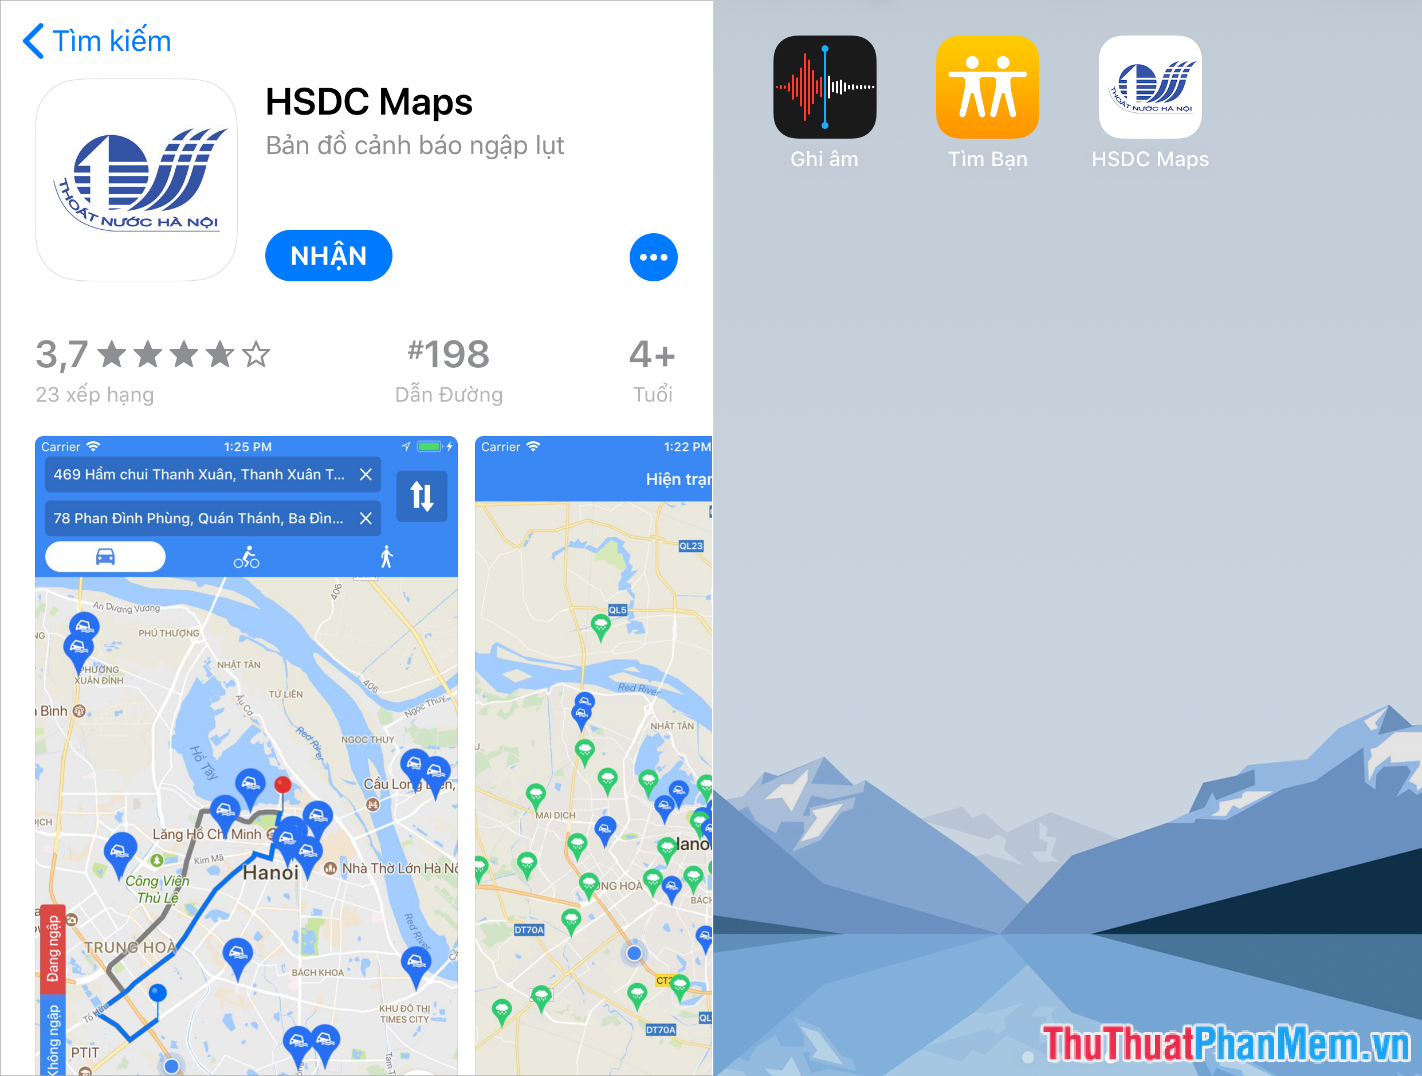 Tải về HSDC Maps từ Android và iOS